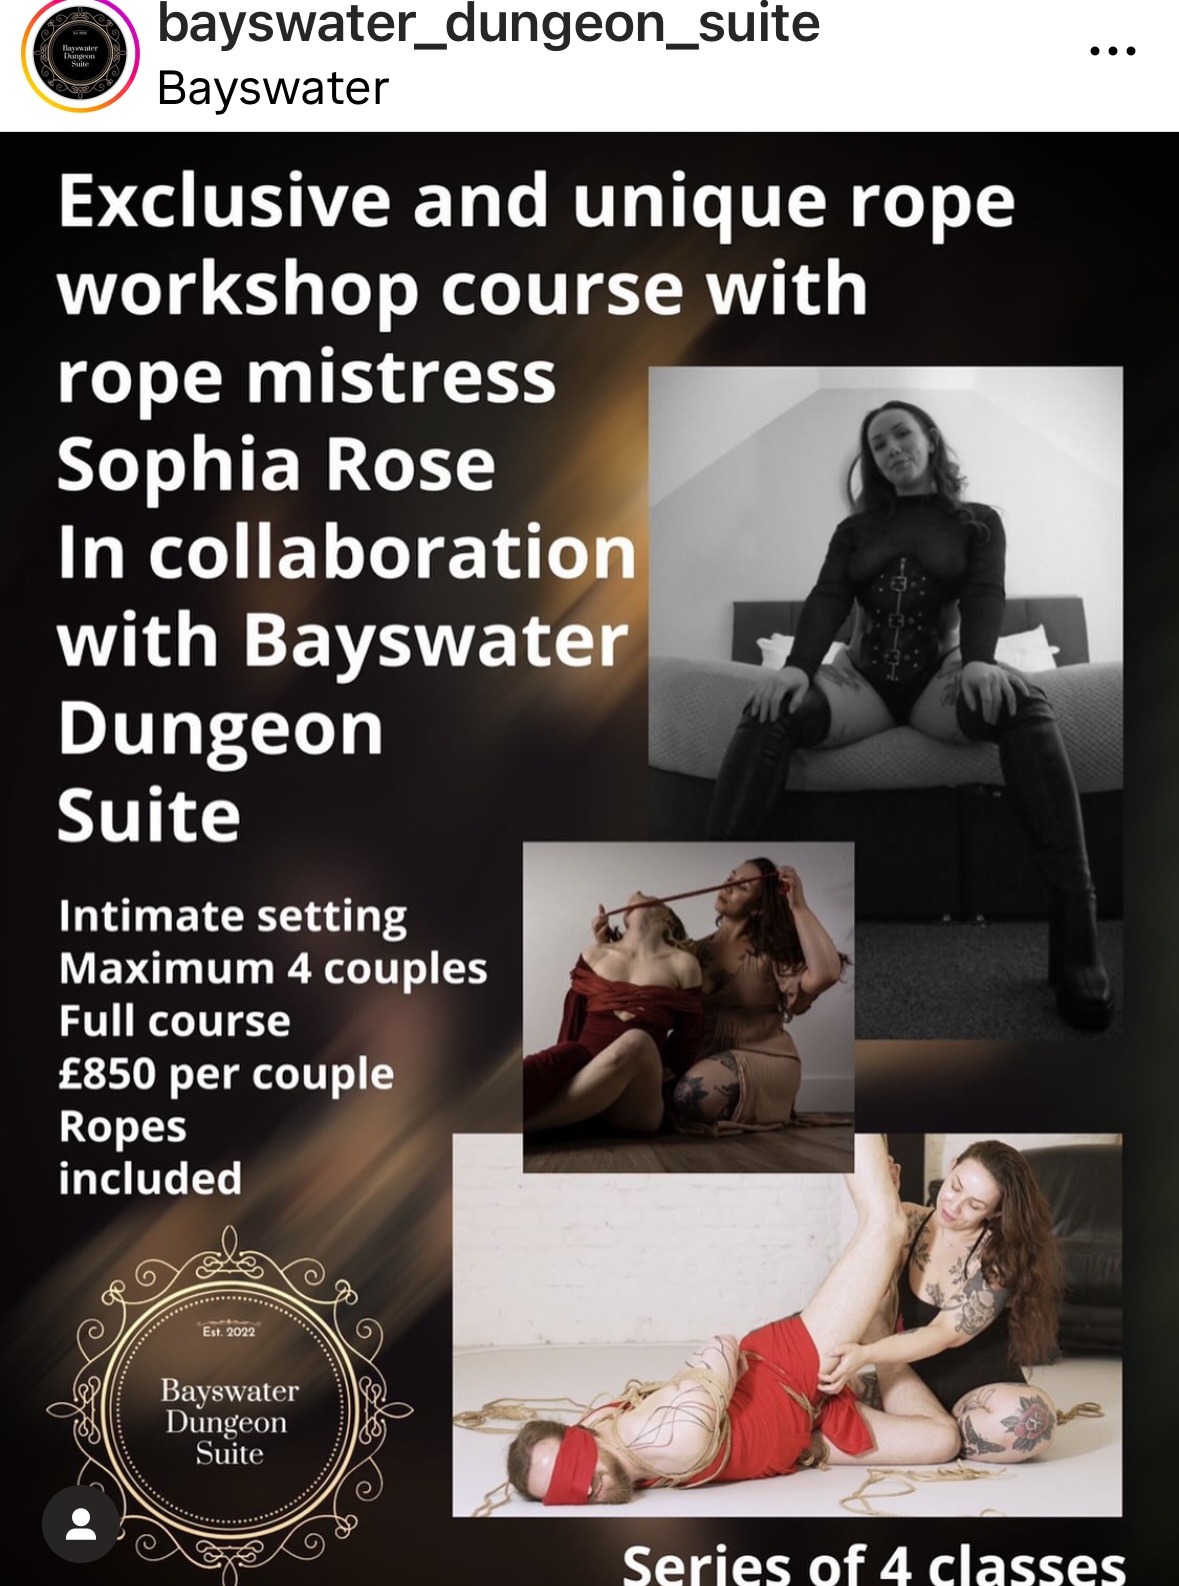 Rope workshop course  rope expert Sophia Rose